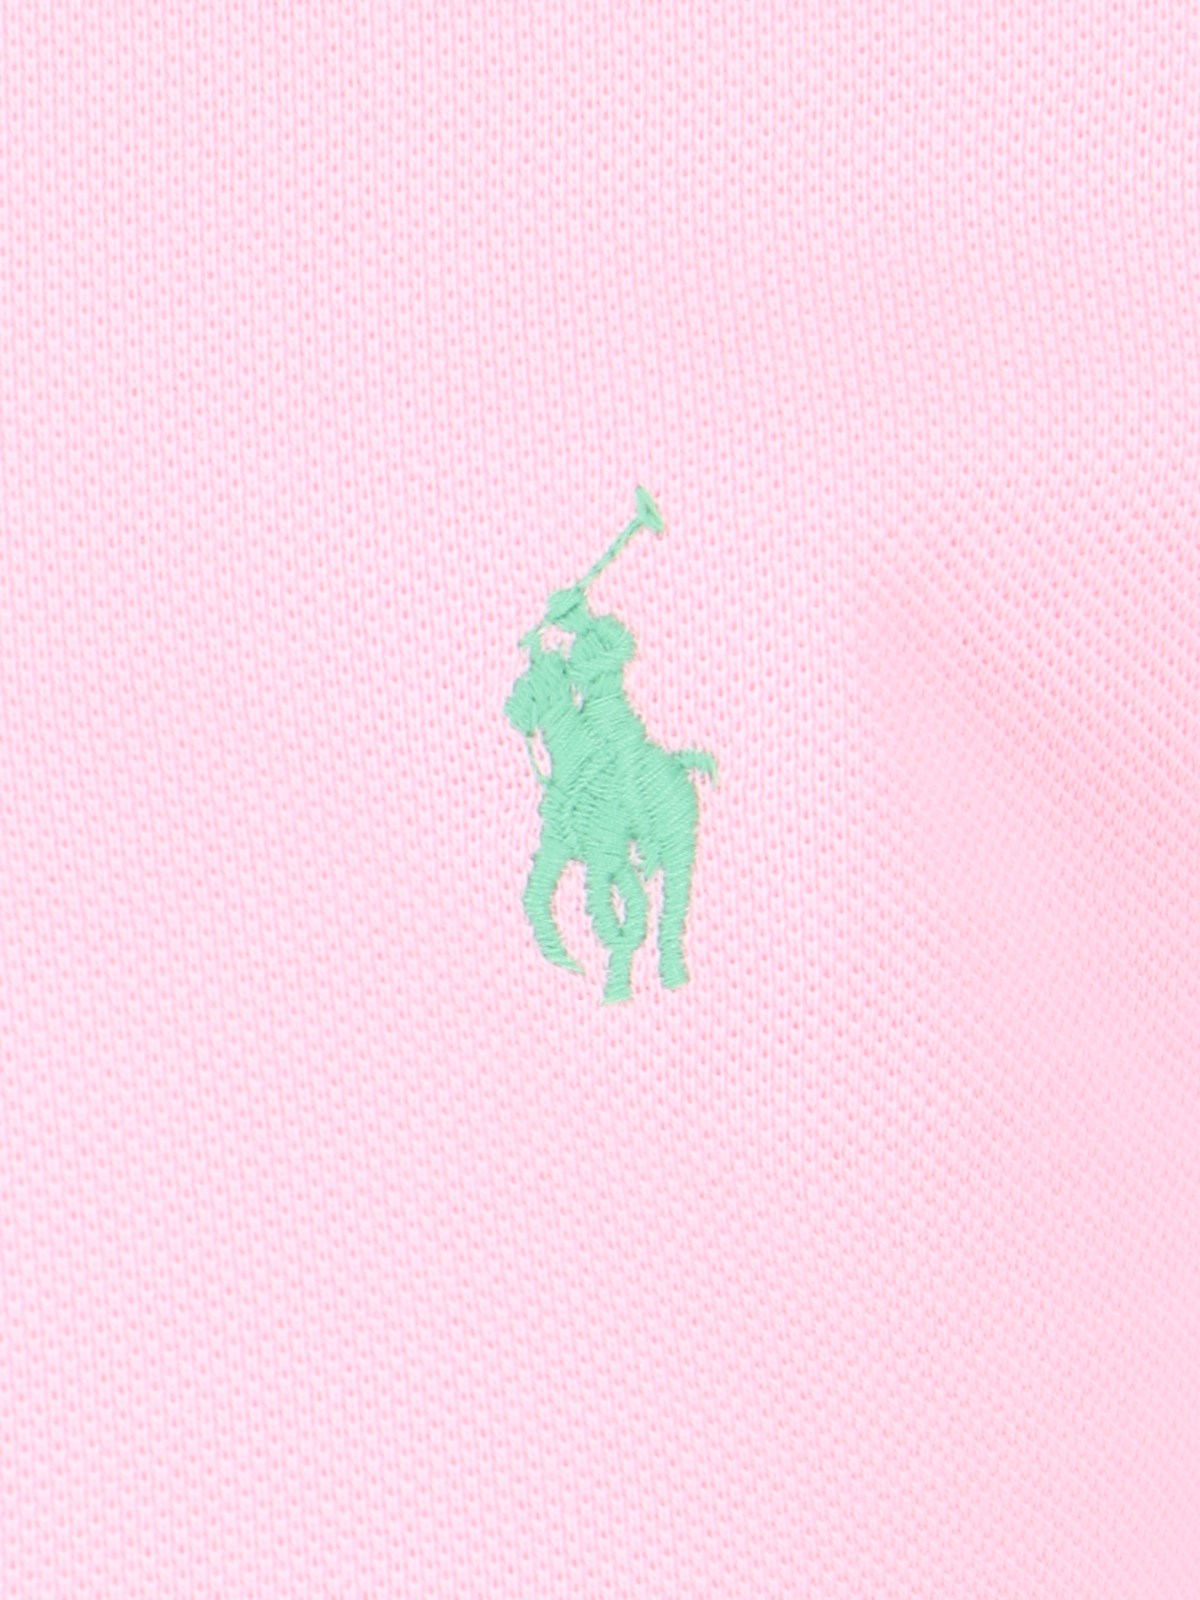 Polo Ralph Lauren polo logo-Polo-Polo Ralph Lauren-Polo logo Polo Ralph Lauren, in cotone rosa, colletto classico, bottoni fronte, maniche corte, ricamo logo verde petto, orlo dritto.-Dresso